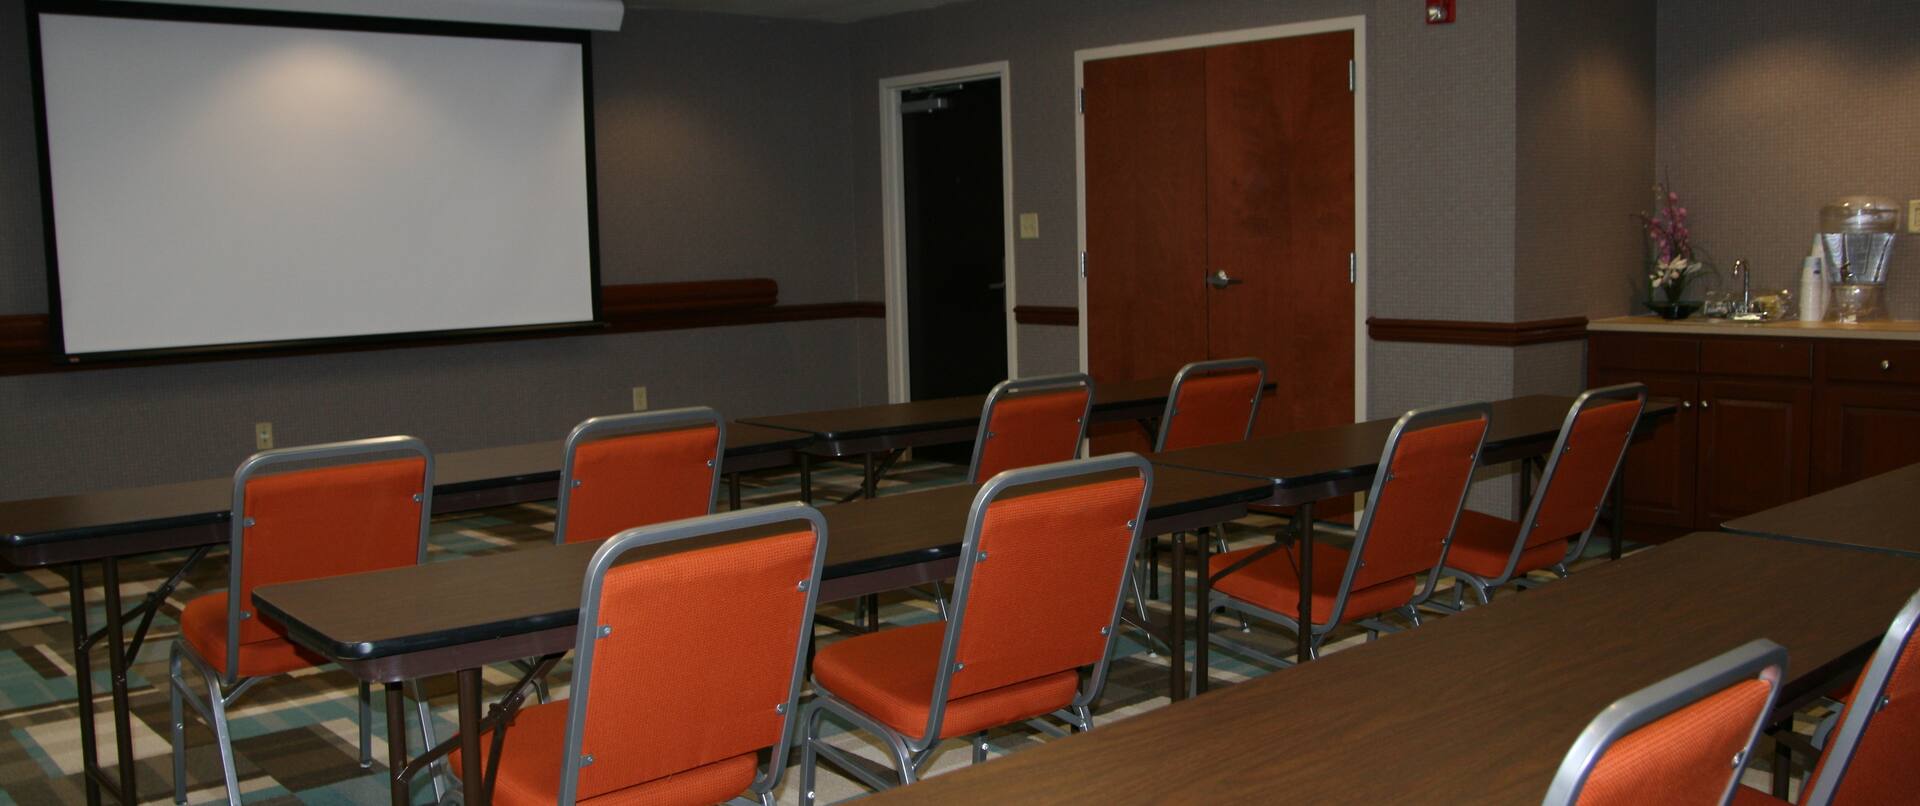 Meeting Room Seating